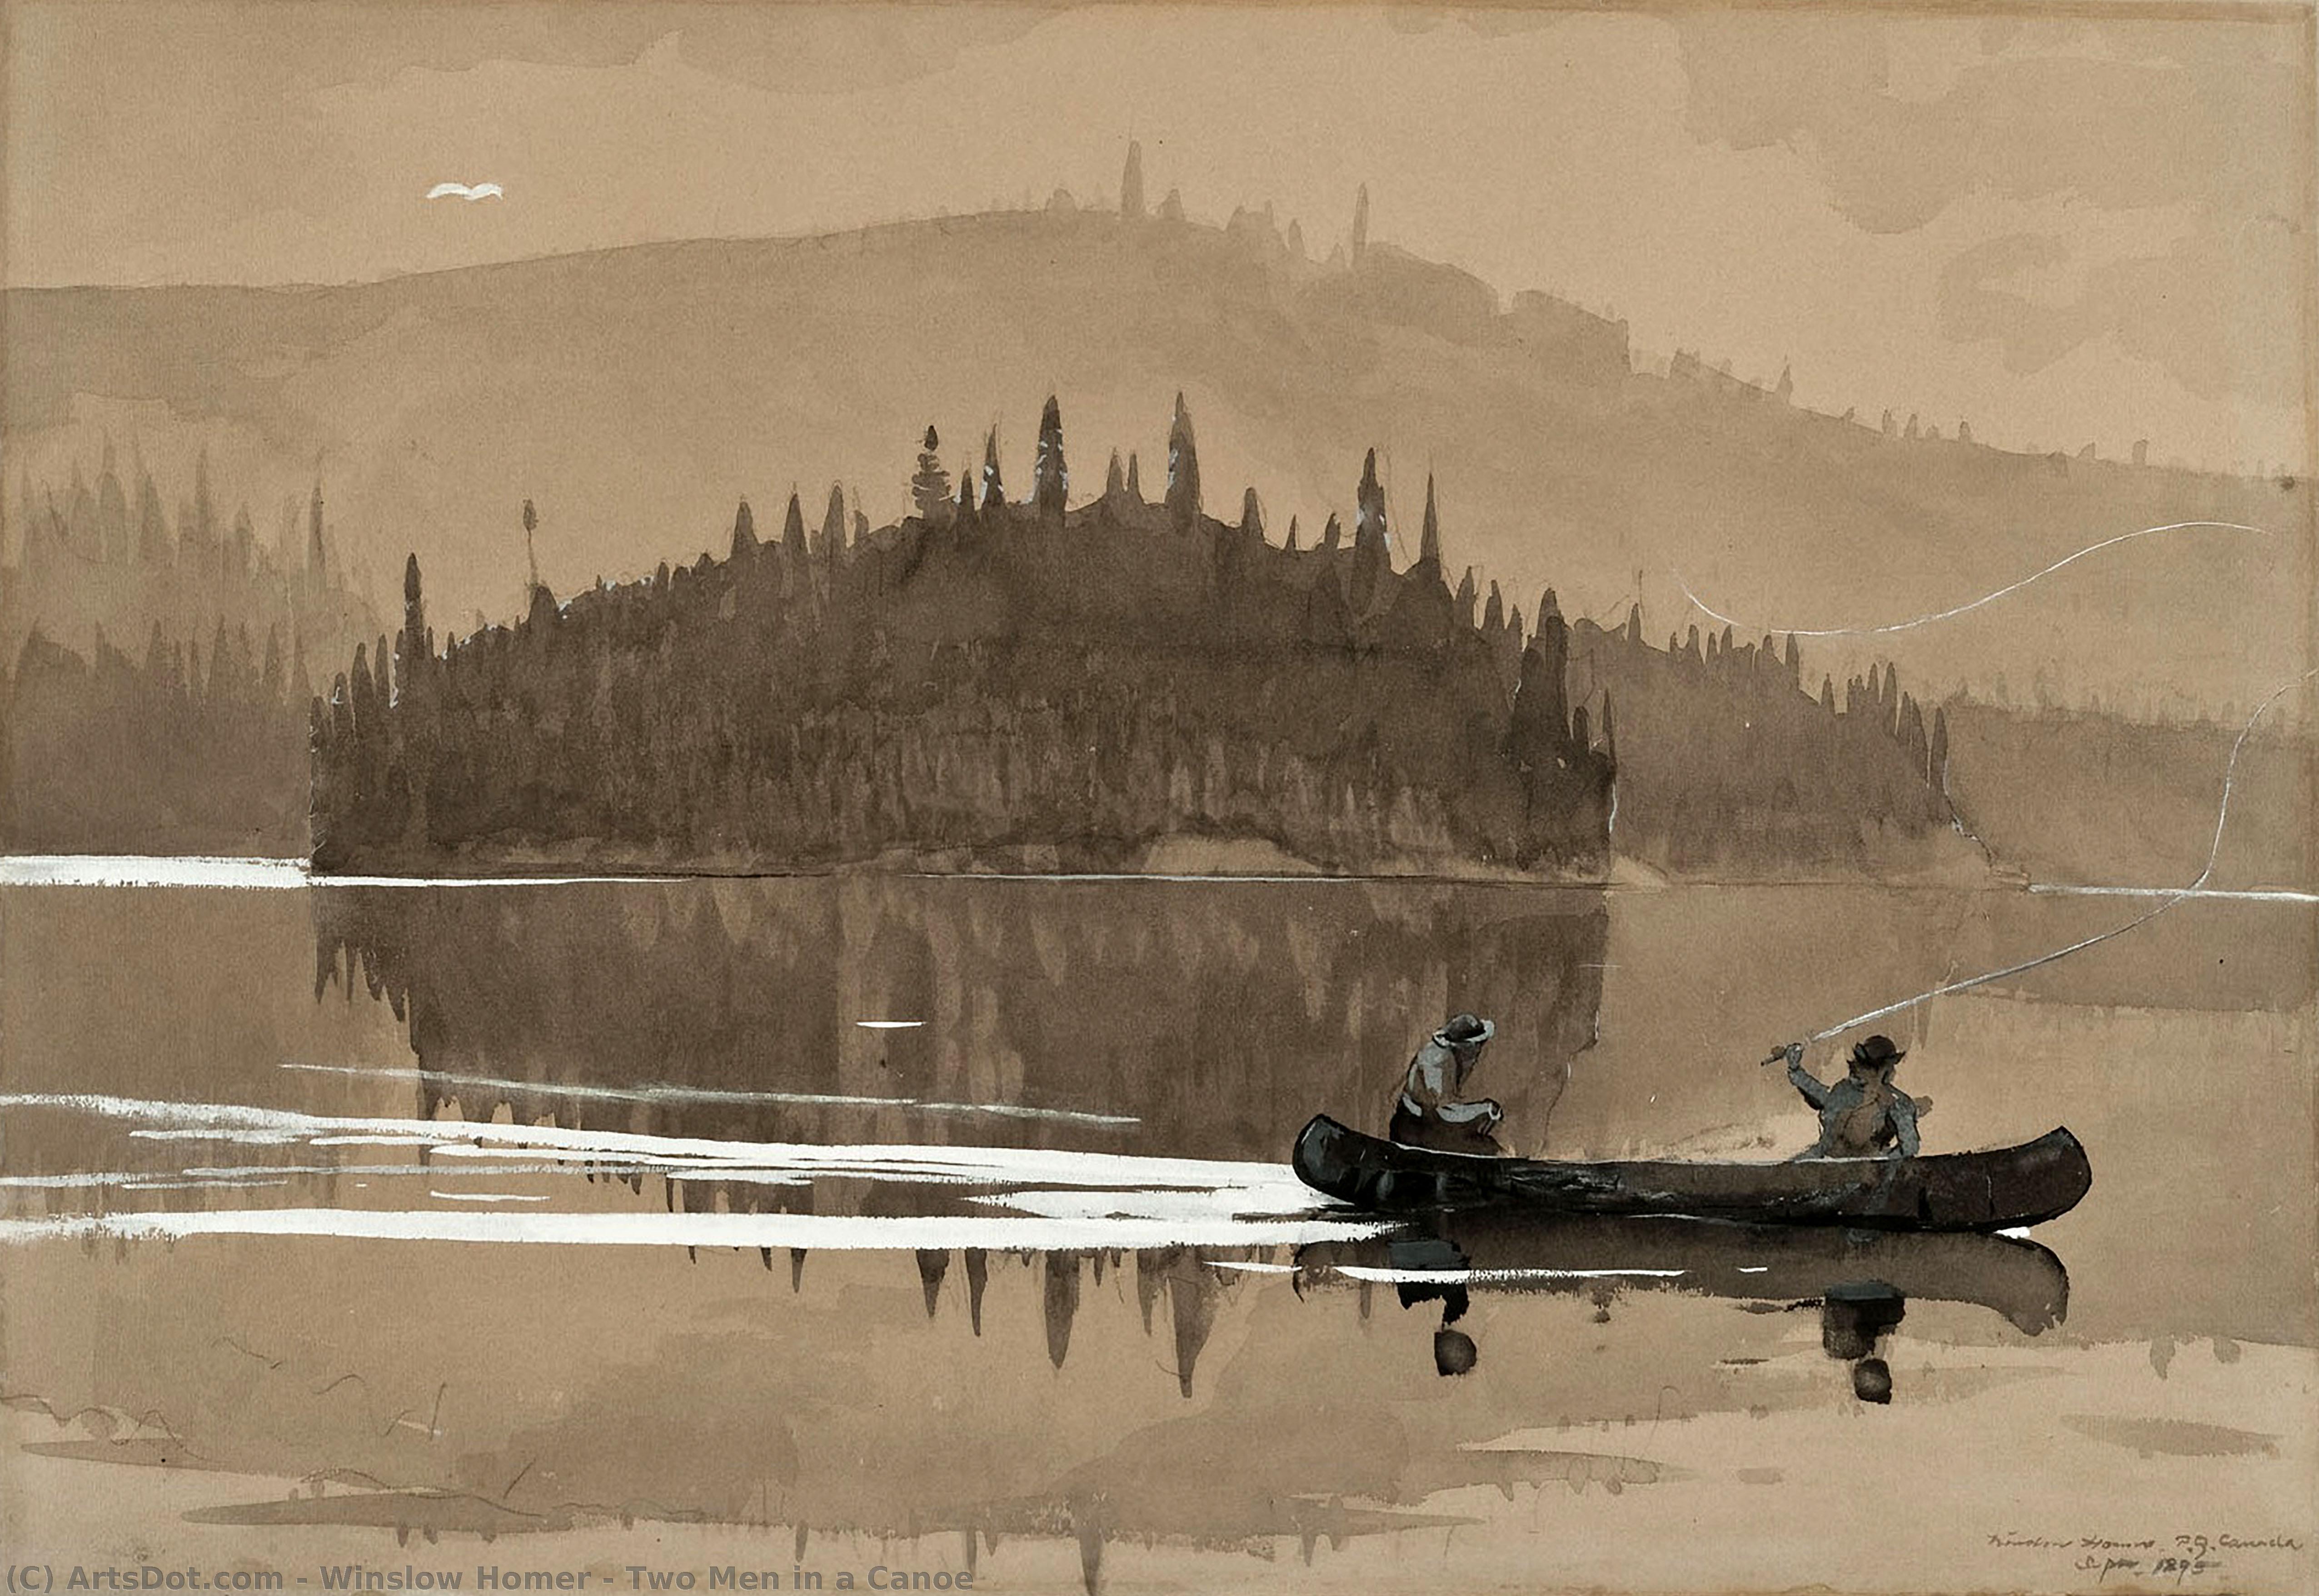 WikiOO.org - Encyclopedia of Fine Arts - Lukisan, Artwork Winslow Homer - Two Men in a Canoe